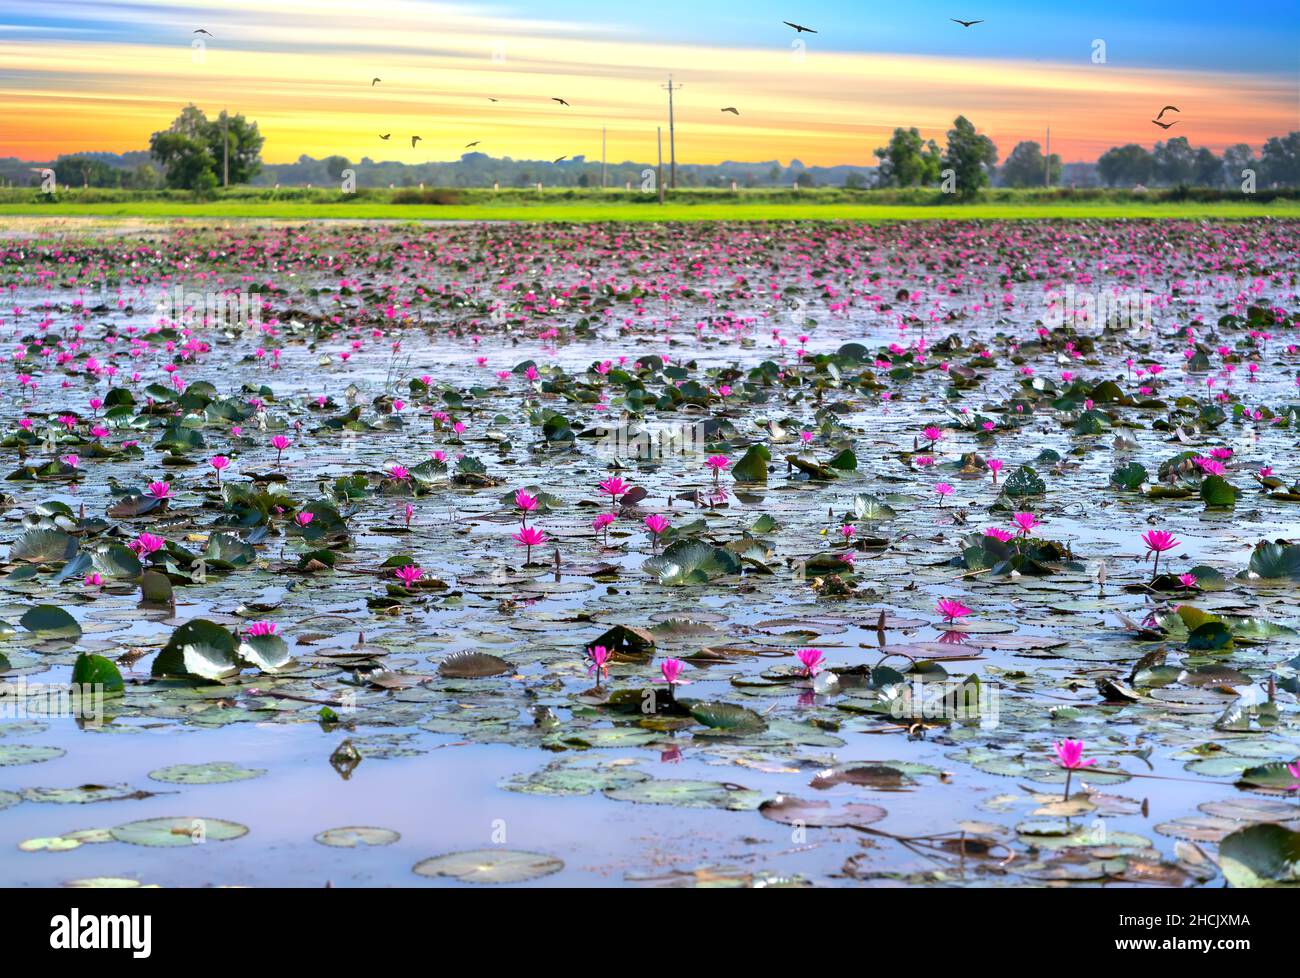 Felder Seerosen blühen in einer großen überfluteten Lagune. Blumen wachsen natürlich, wenn das Hochwasser hoch ist, repräsentieren die Reinheit, Einfachheit Stockfoto